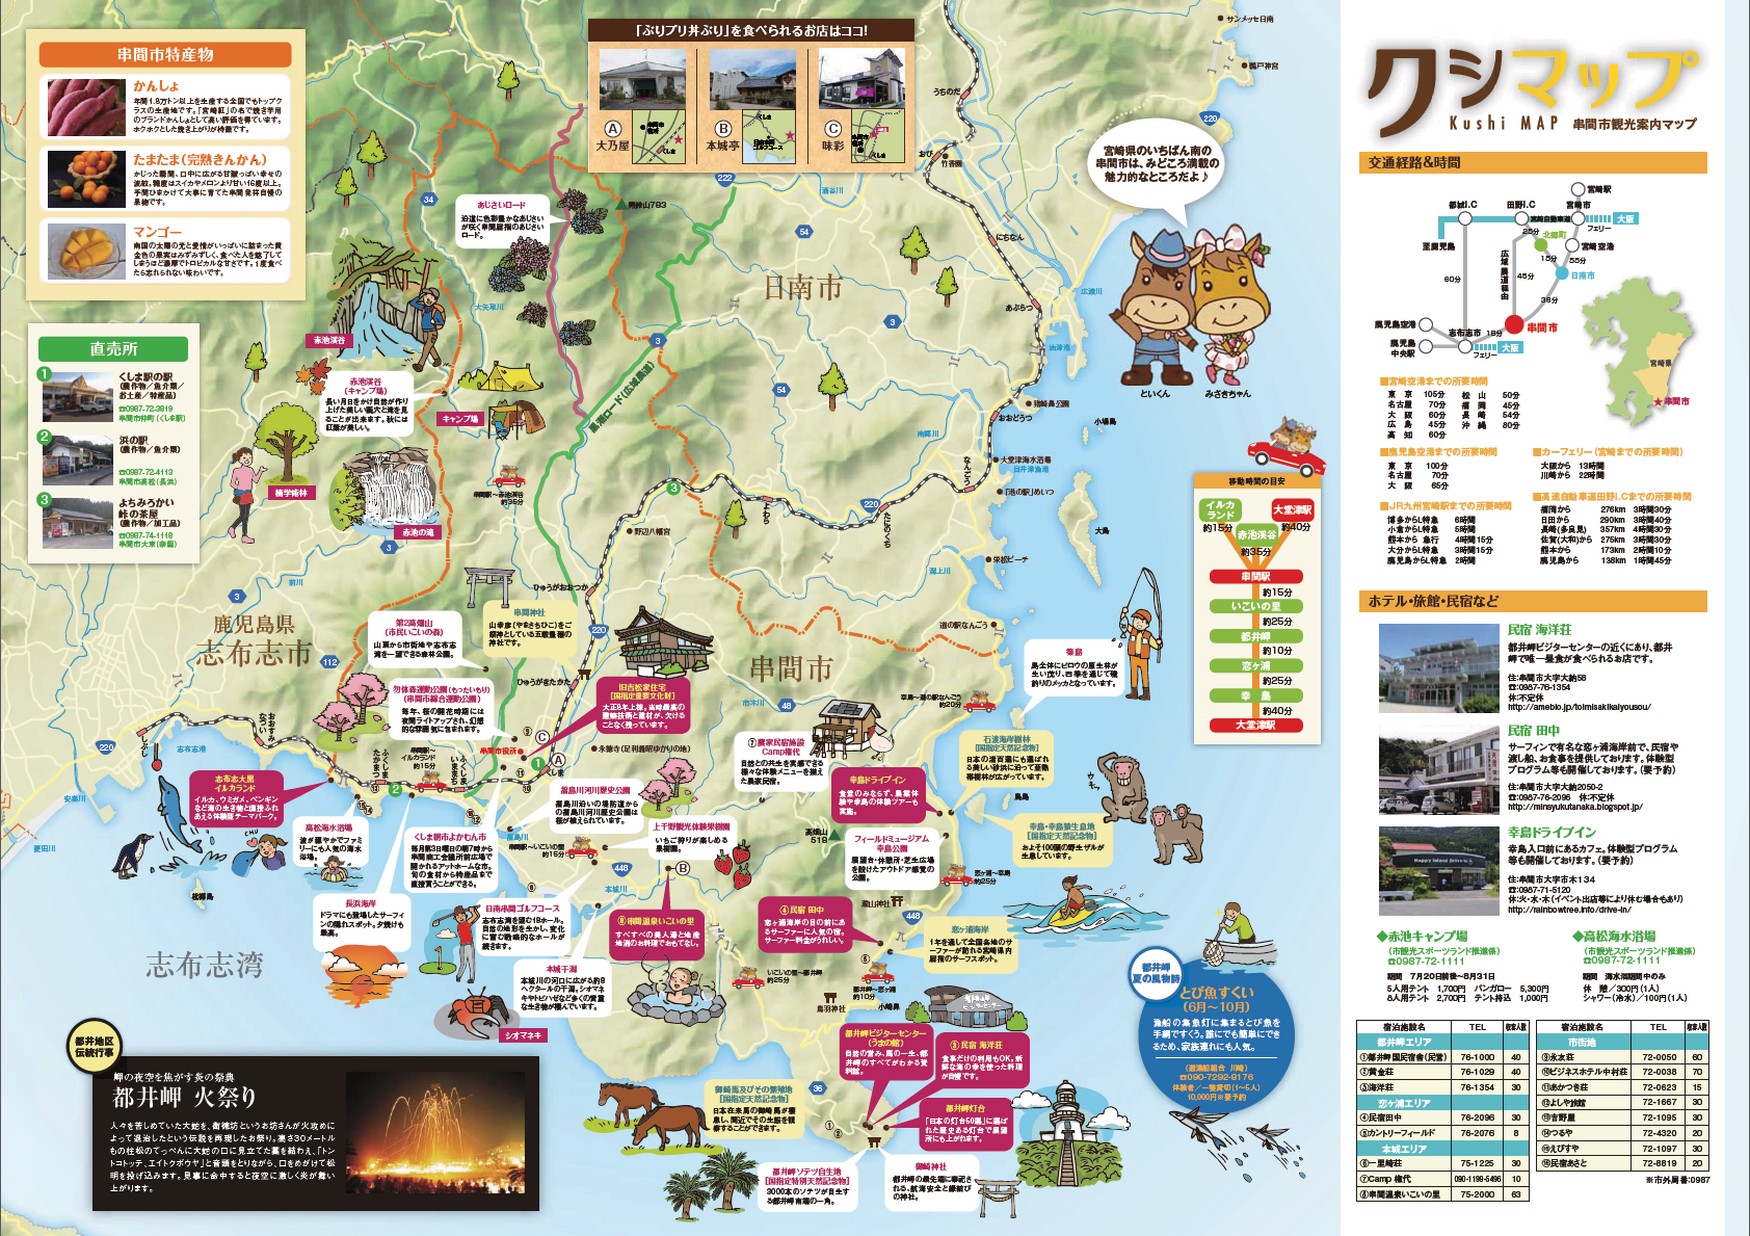 クシマップ 串間市観光案内マップ ミヤザキイーブックス Miyazaki Ebooks 宮崎県の電子書籍サイト